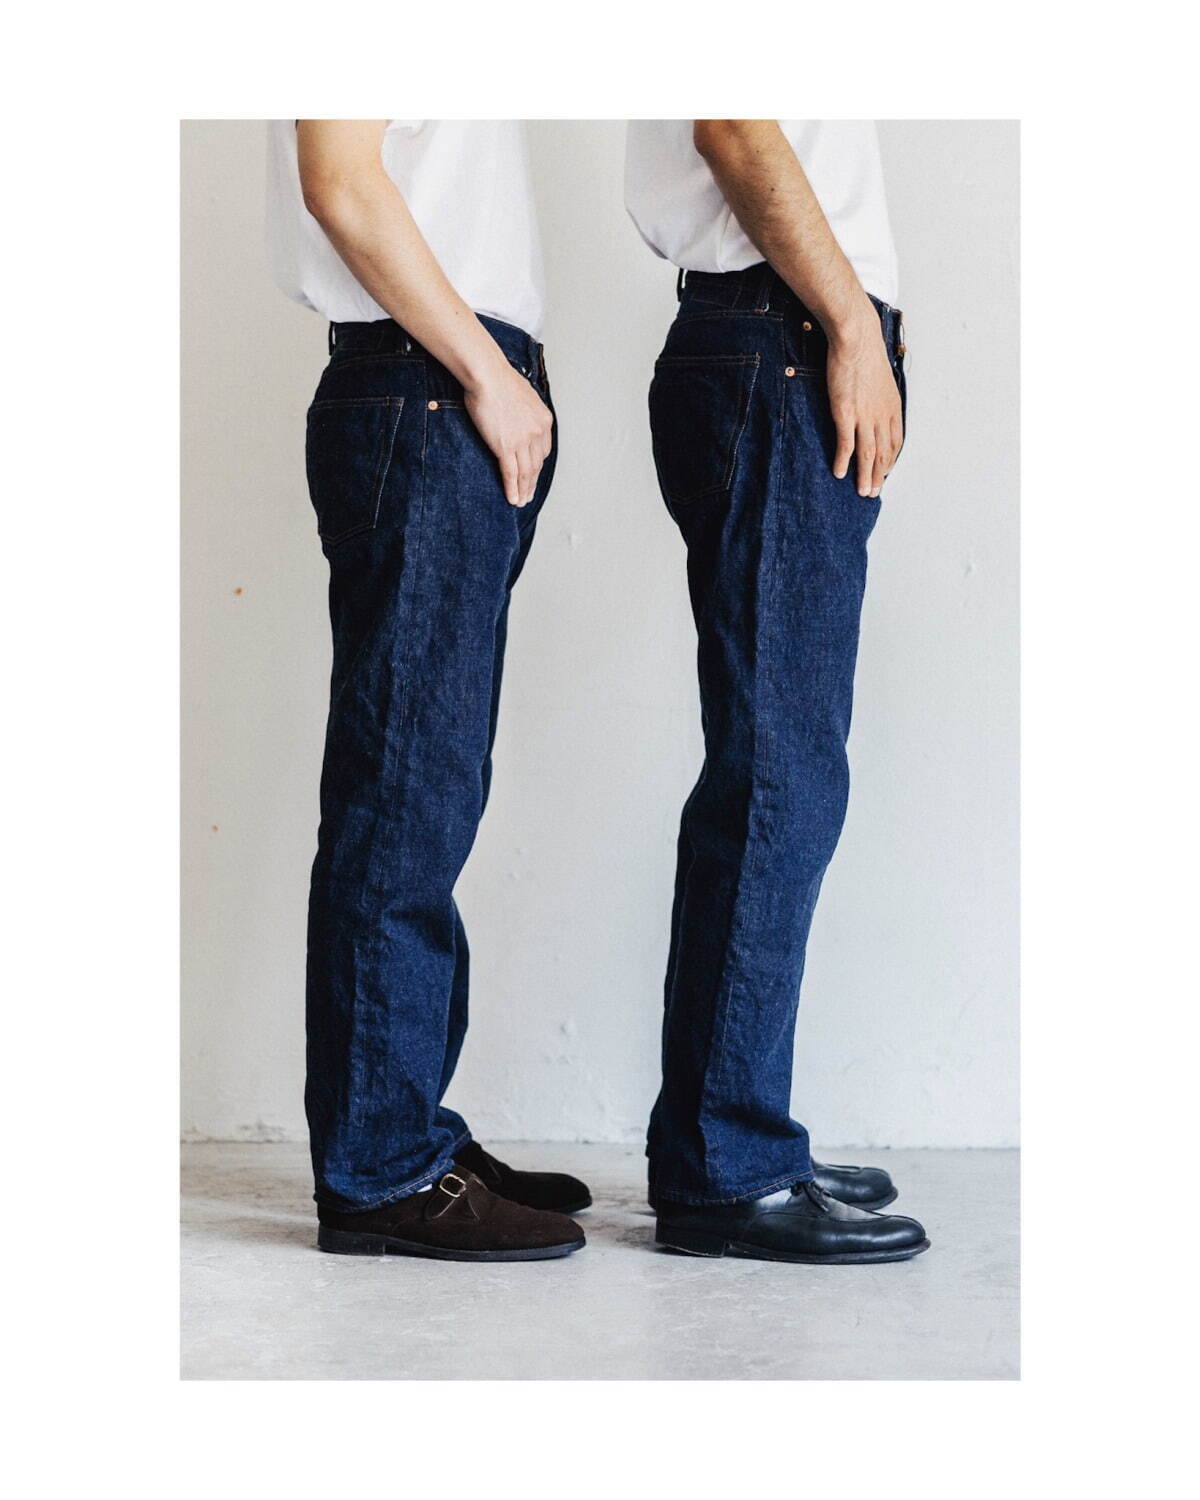 レショップ「エルイー」初のインディゴデニム、80～90年のジーンズ再現 